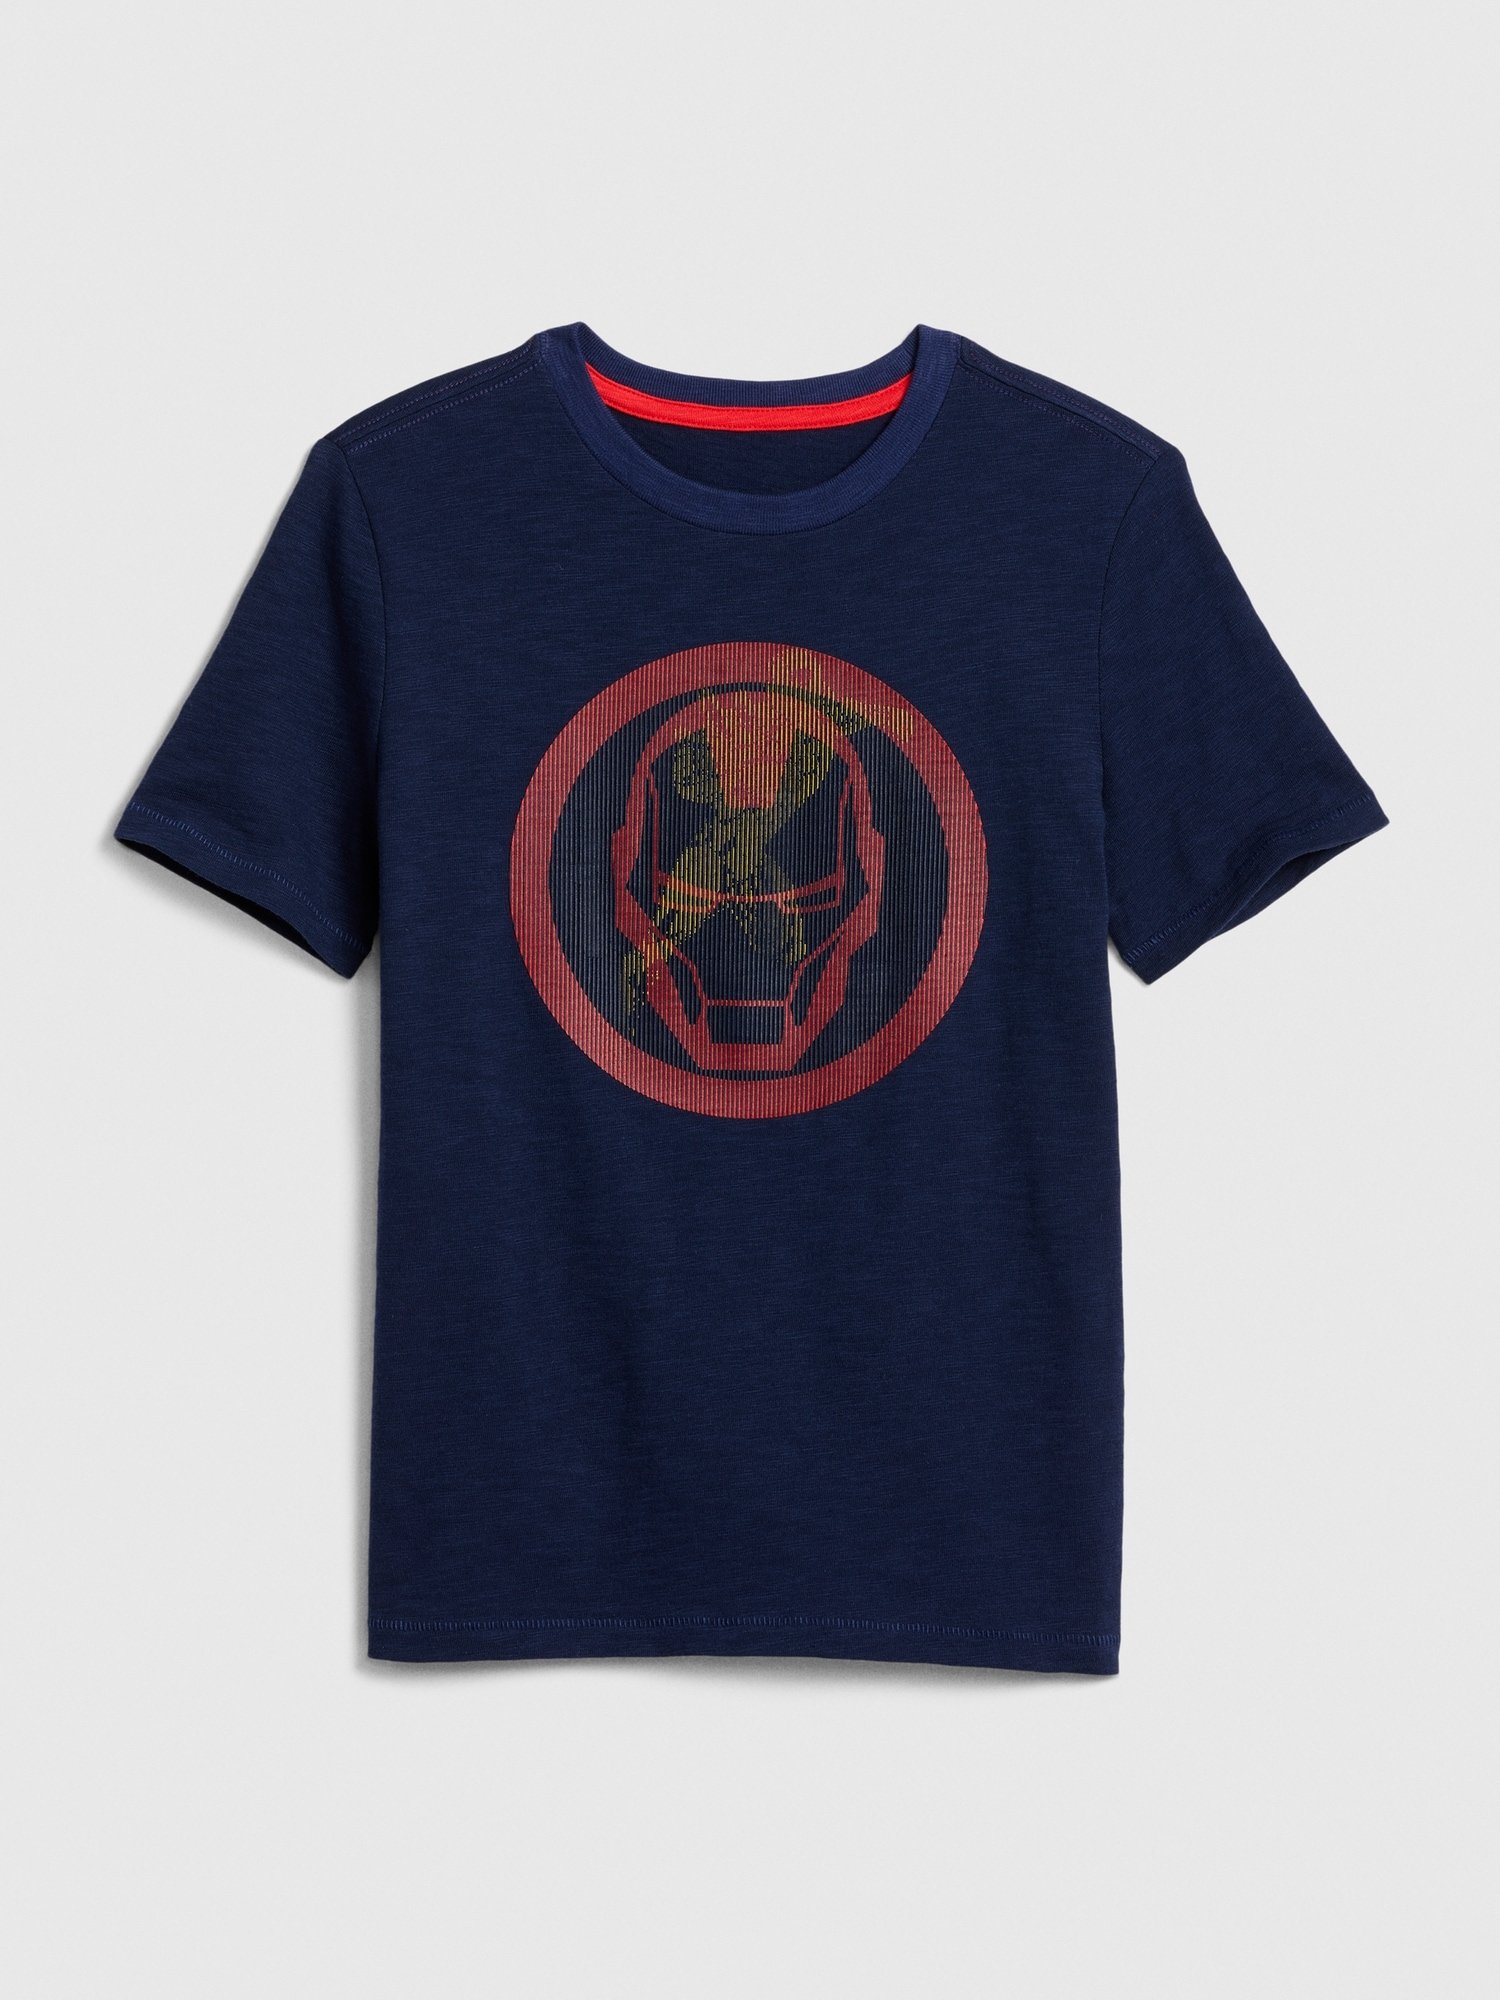 Marvel Hologram T-Shirt product image